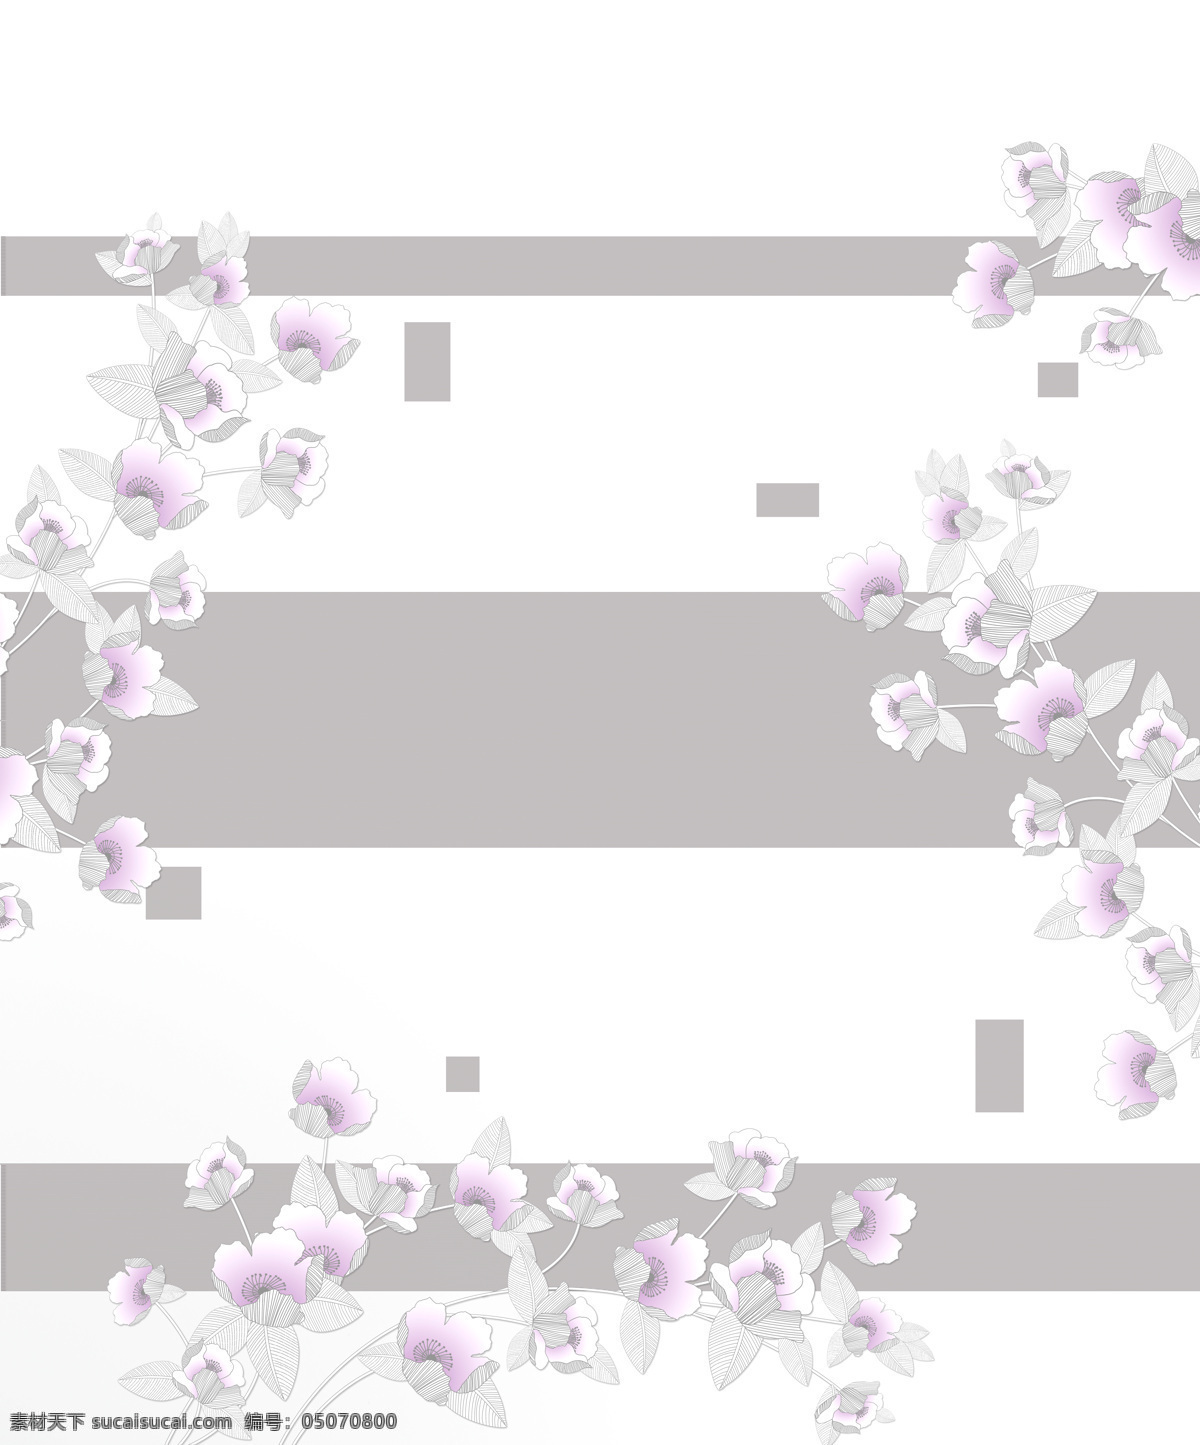 紫花方块 紫花 方块 树叶 花朵 线条 移门图片 移门图案